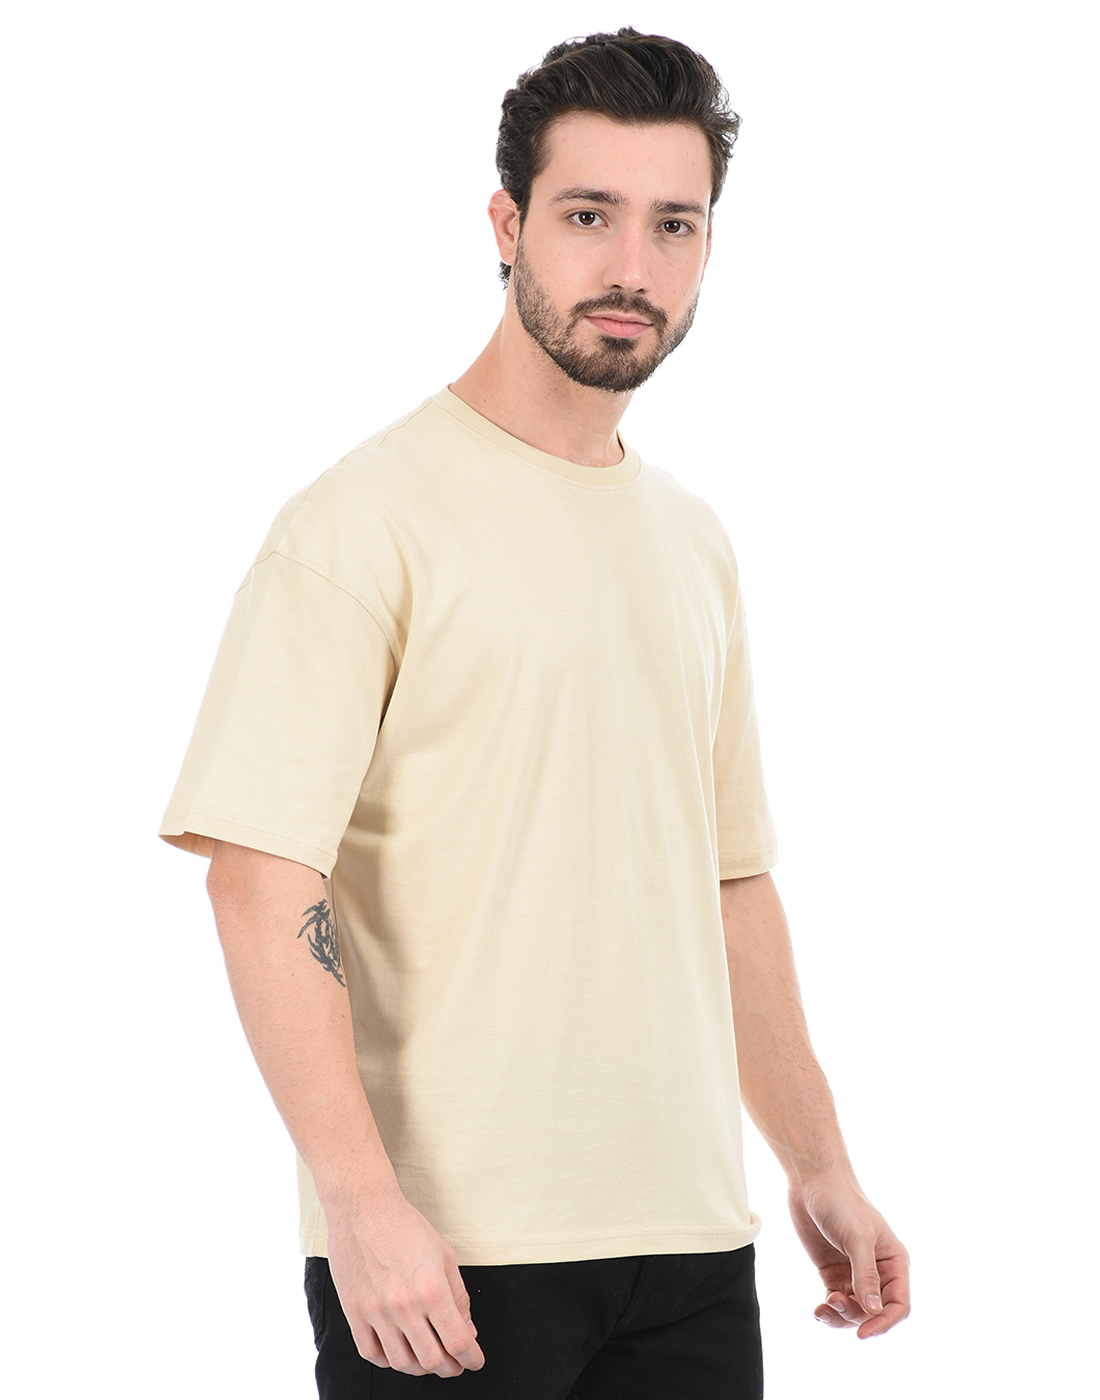 Oneway Unisex Solid Beige T-Shirt